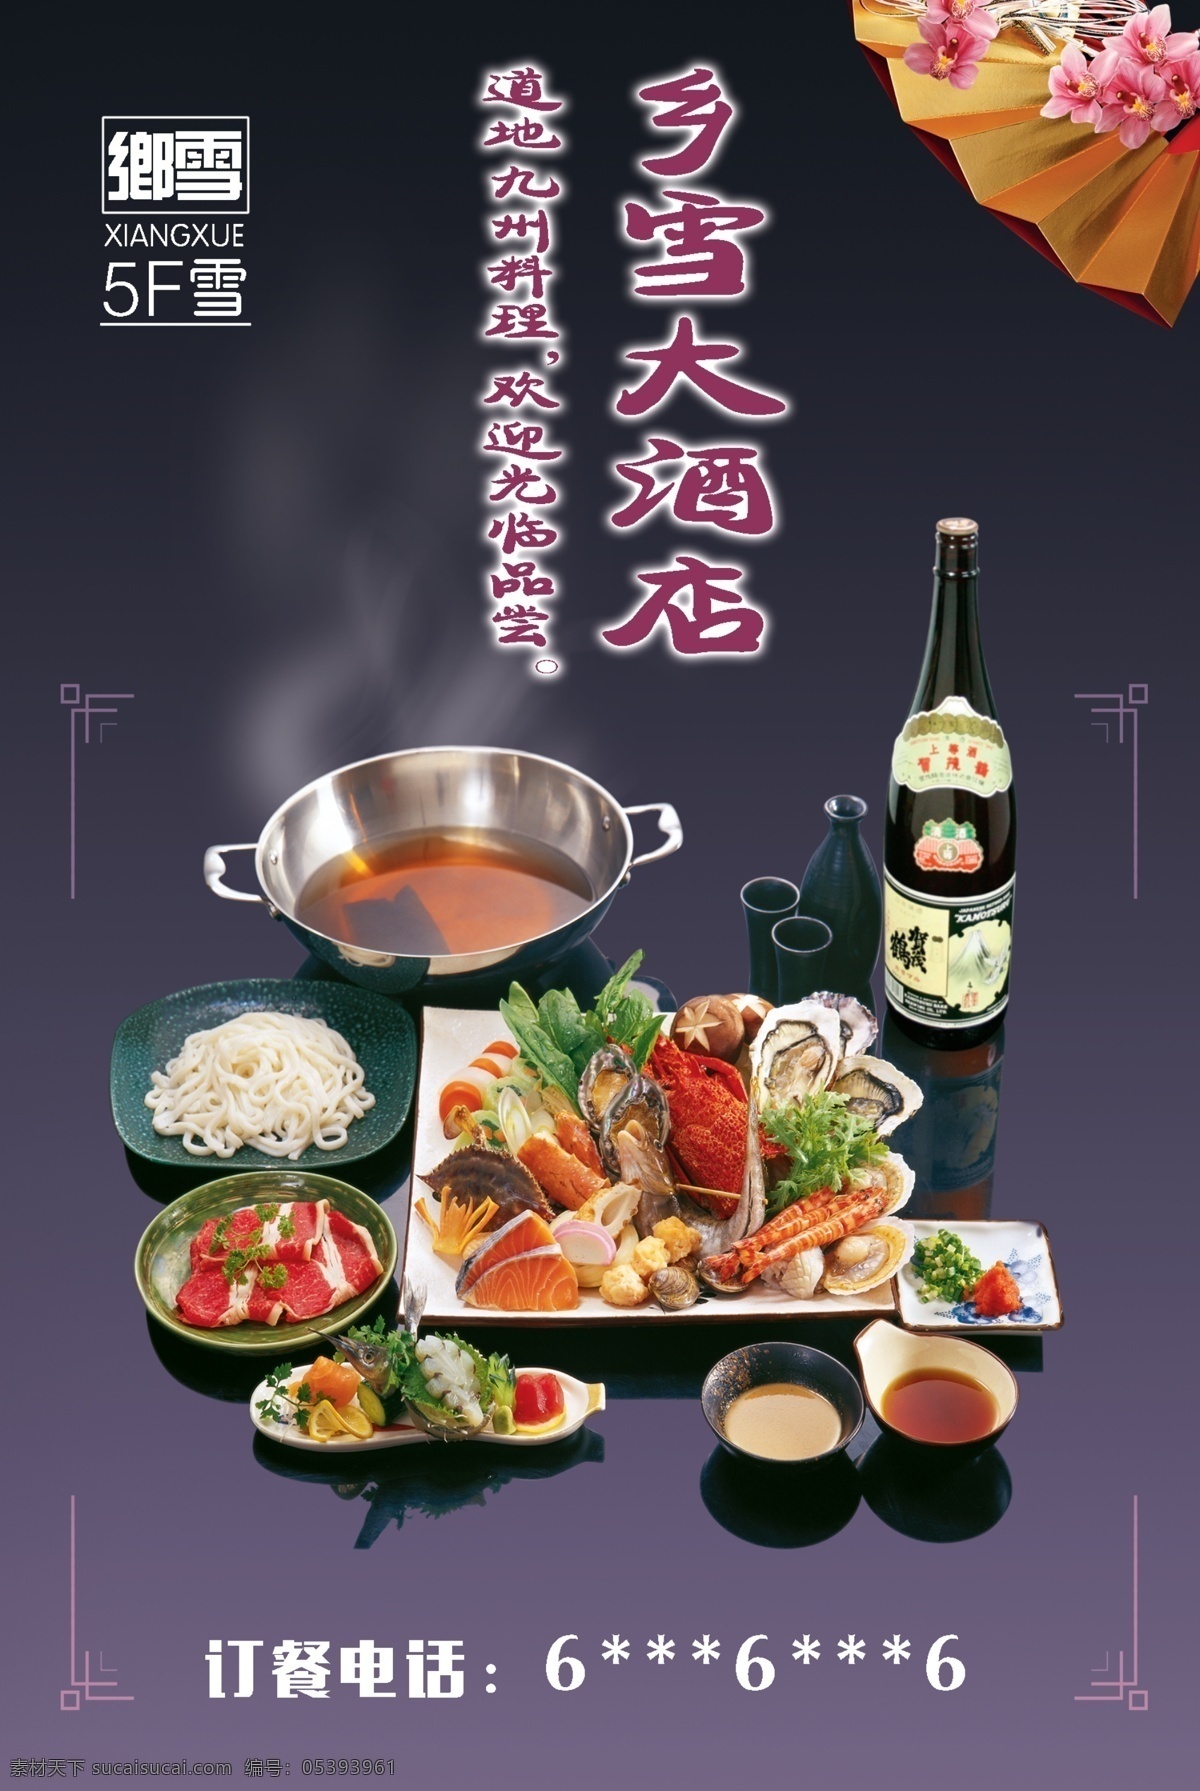 乡雪酒店 餐饮海报 psd源文件 高清海报素材 餐饮促销广告 菜品 广告 促销 黑色